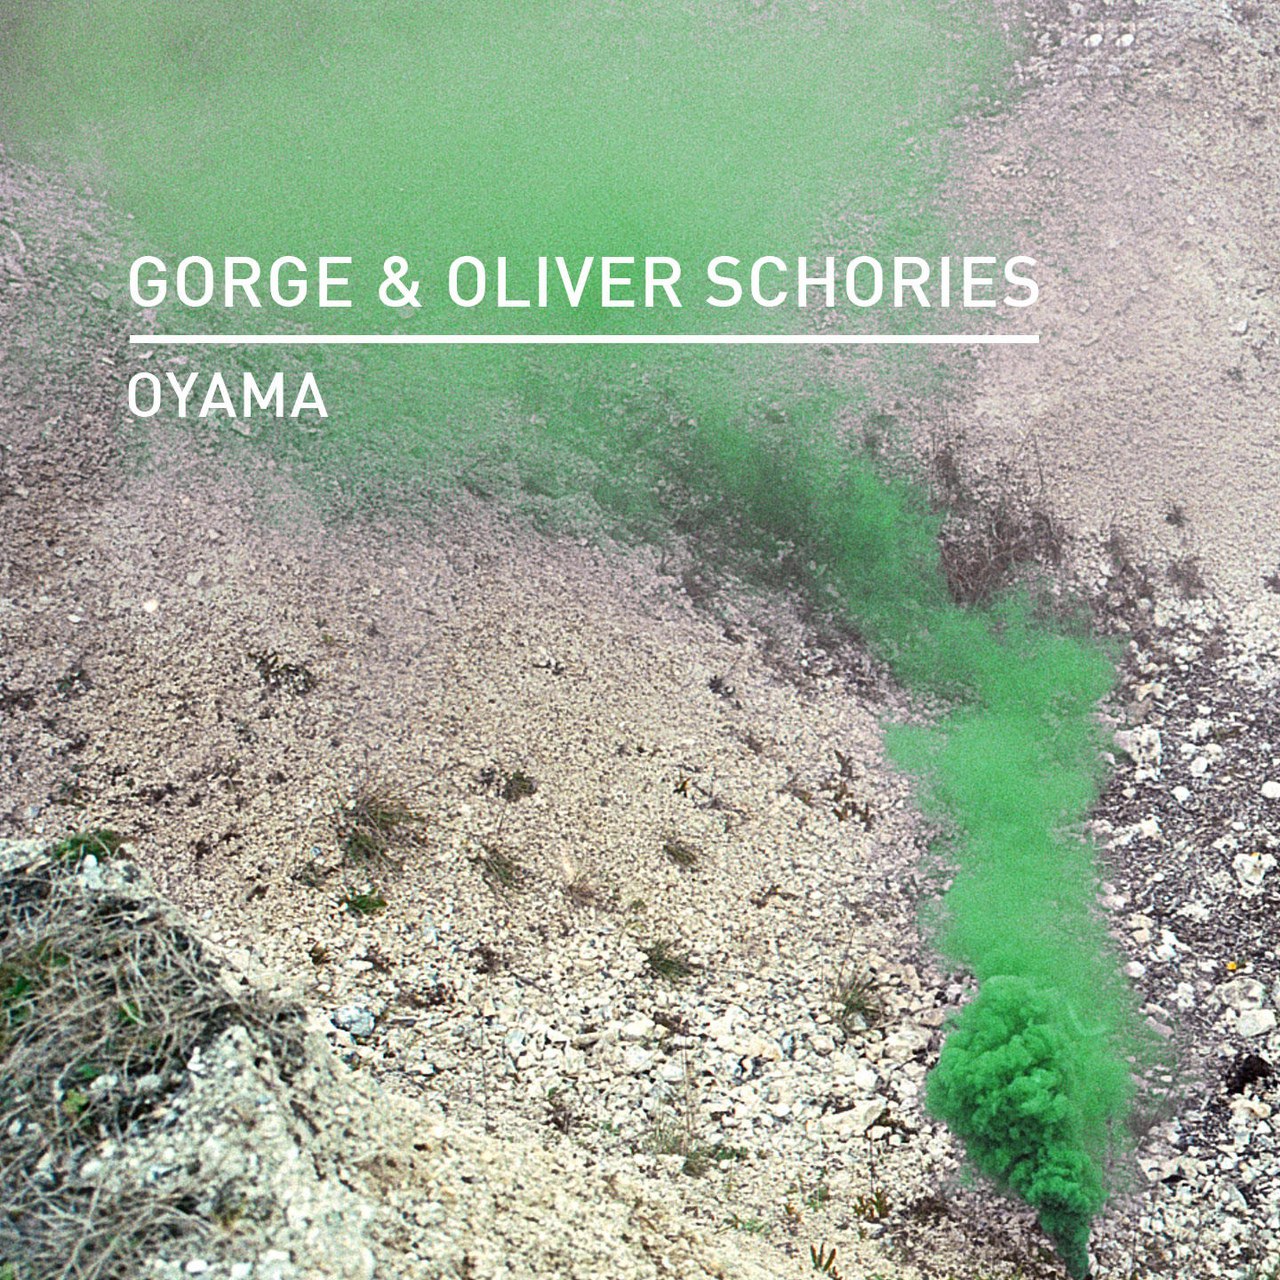 Gorge, Oliver Schories - Oyama (Original Mix)